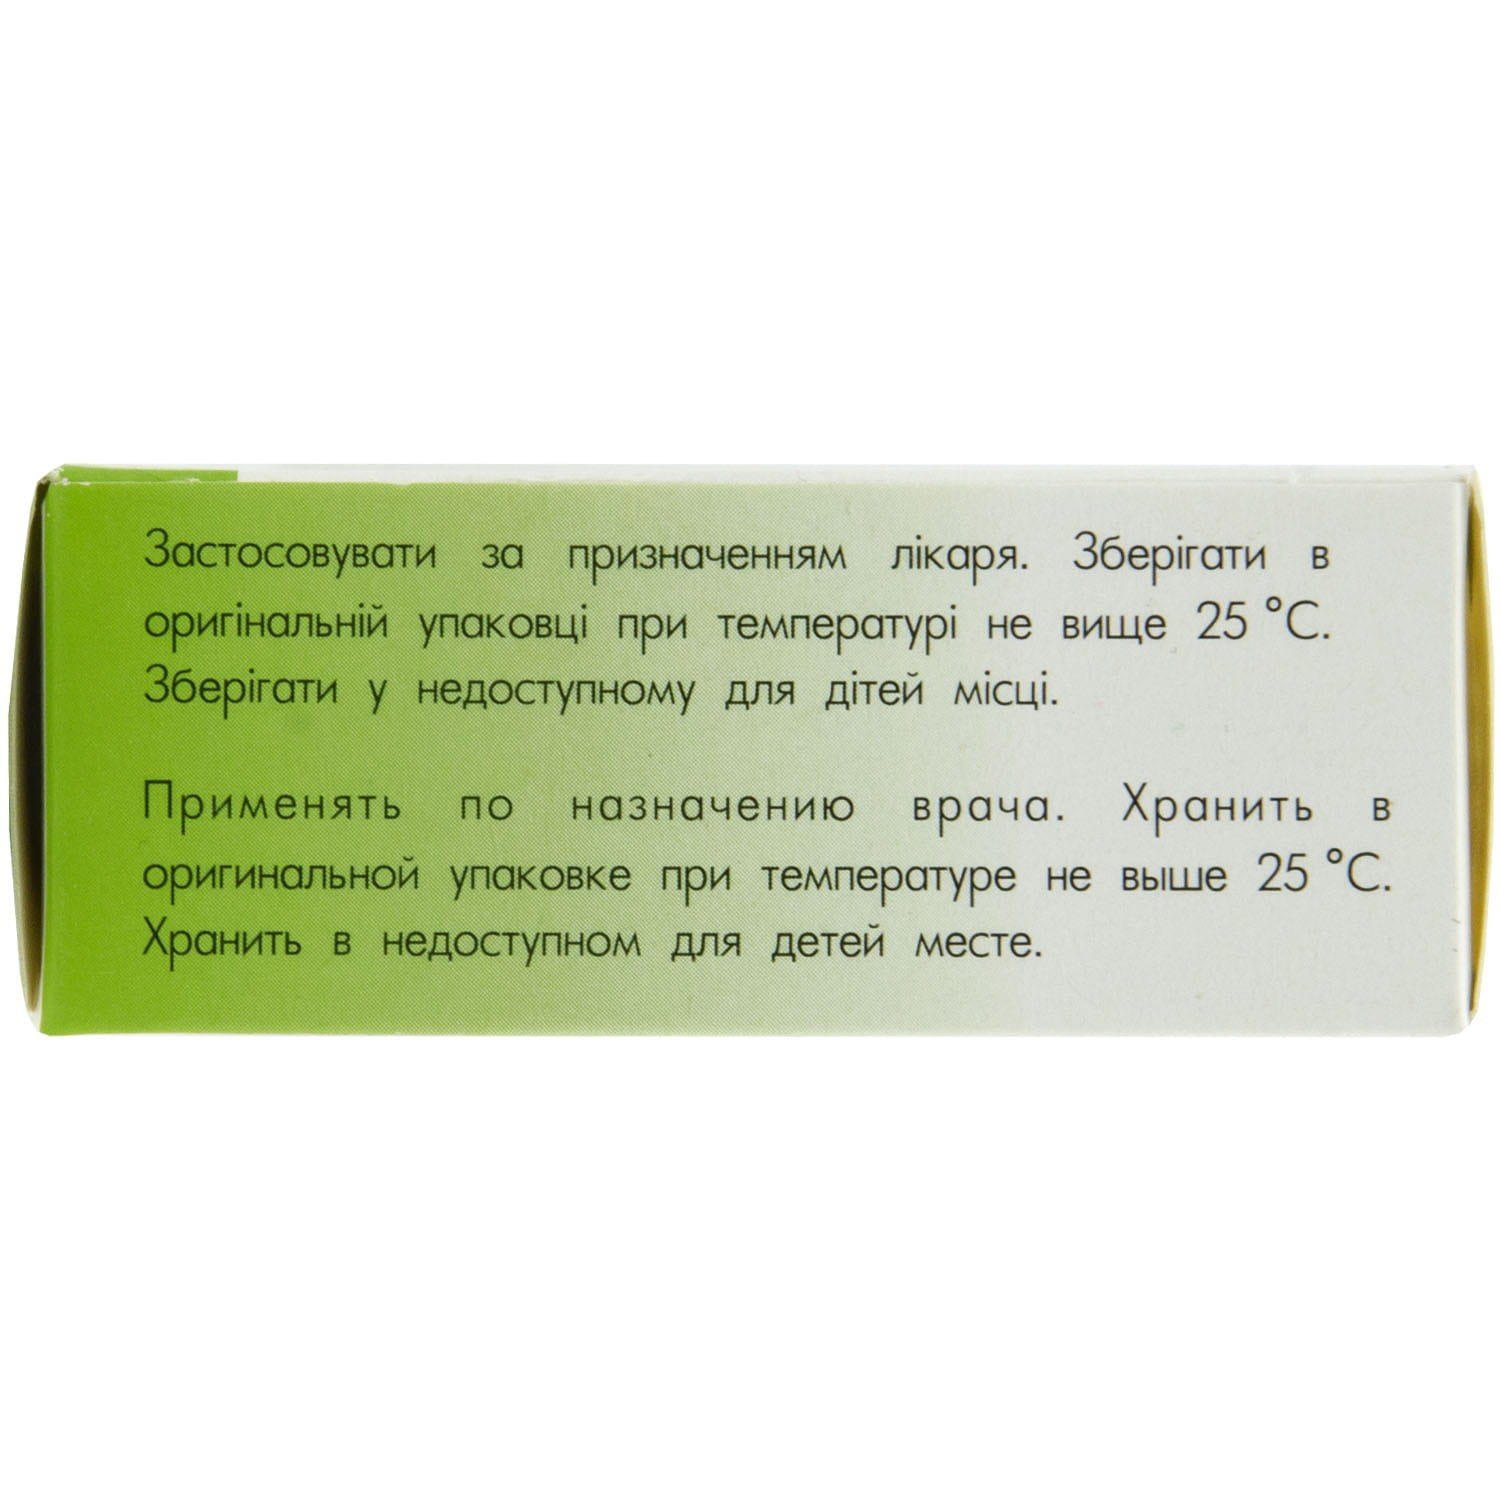 Бензонал IC таблетки проти епілепсії 100 мг, 50 шт.: інструкція, ціна .